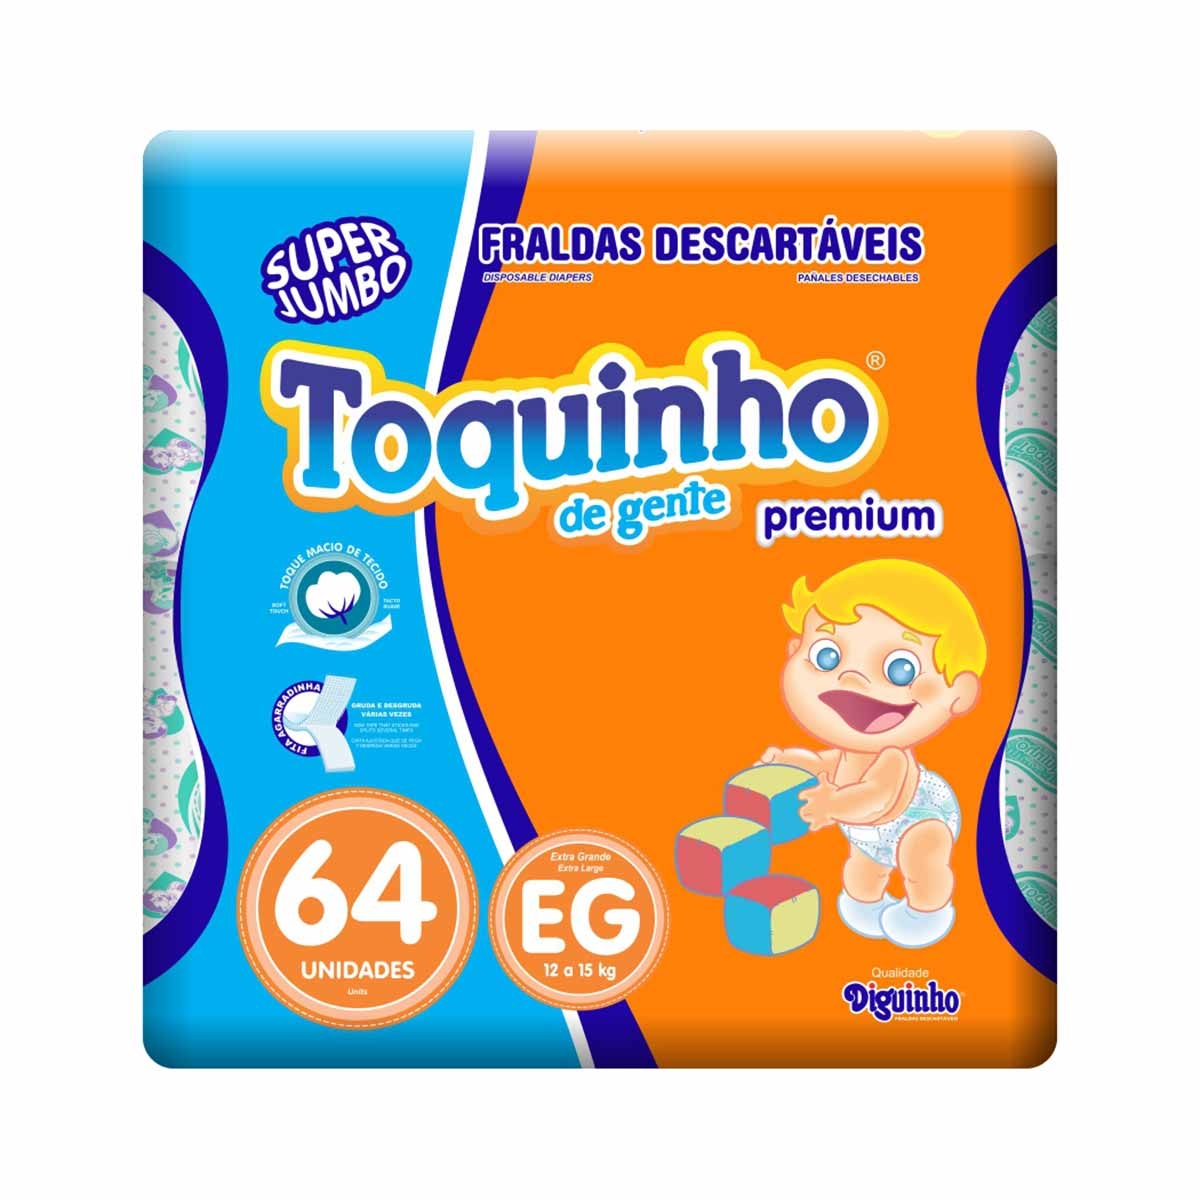 Fralda Toquinho de Gente Premium Tamanho XG 64 Tiras